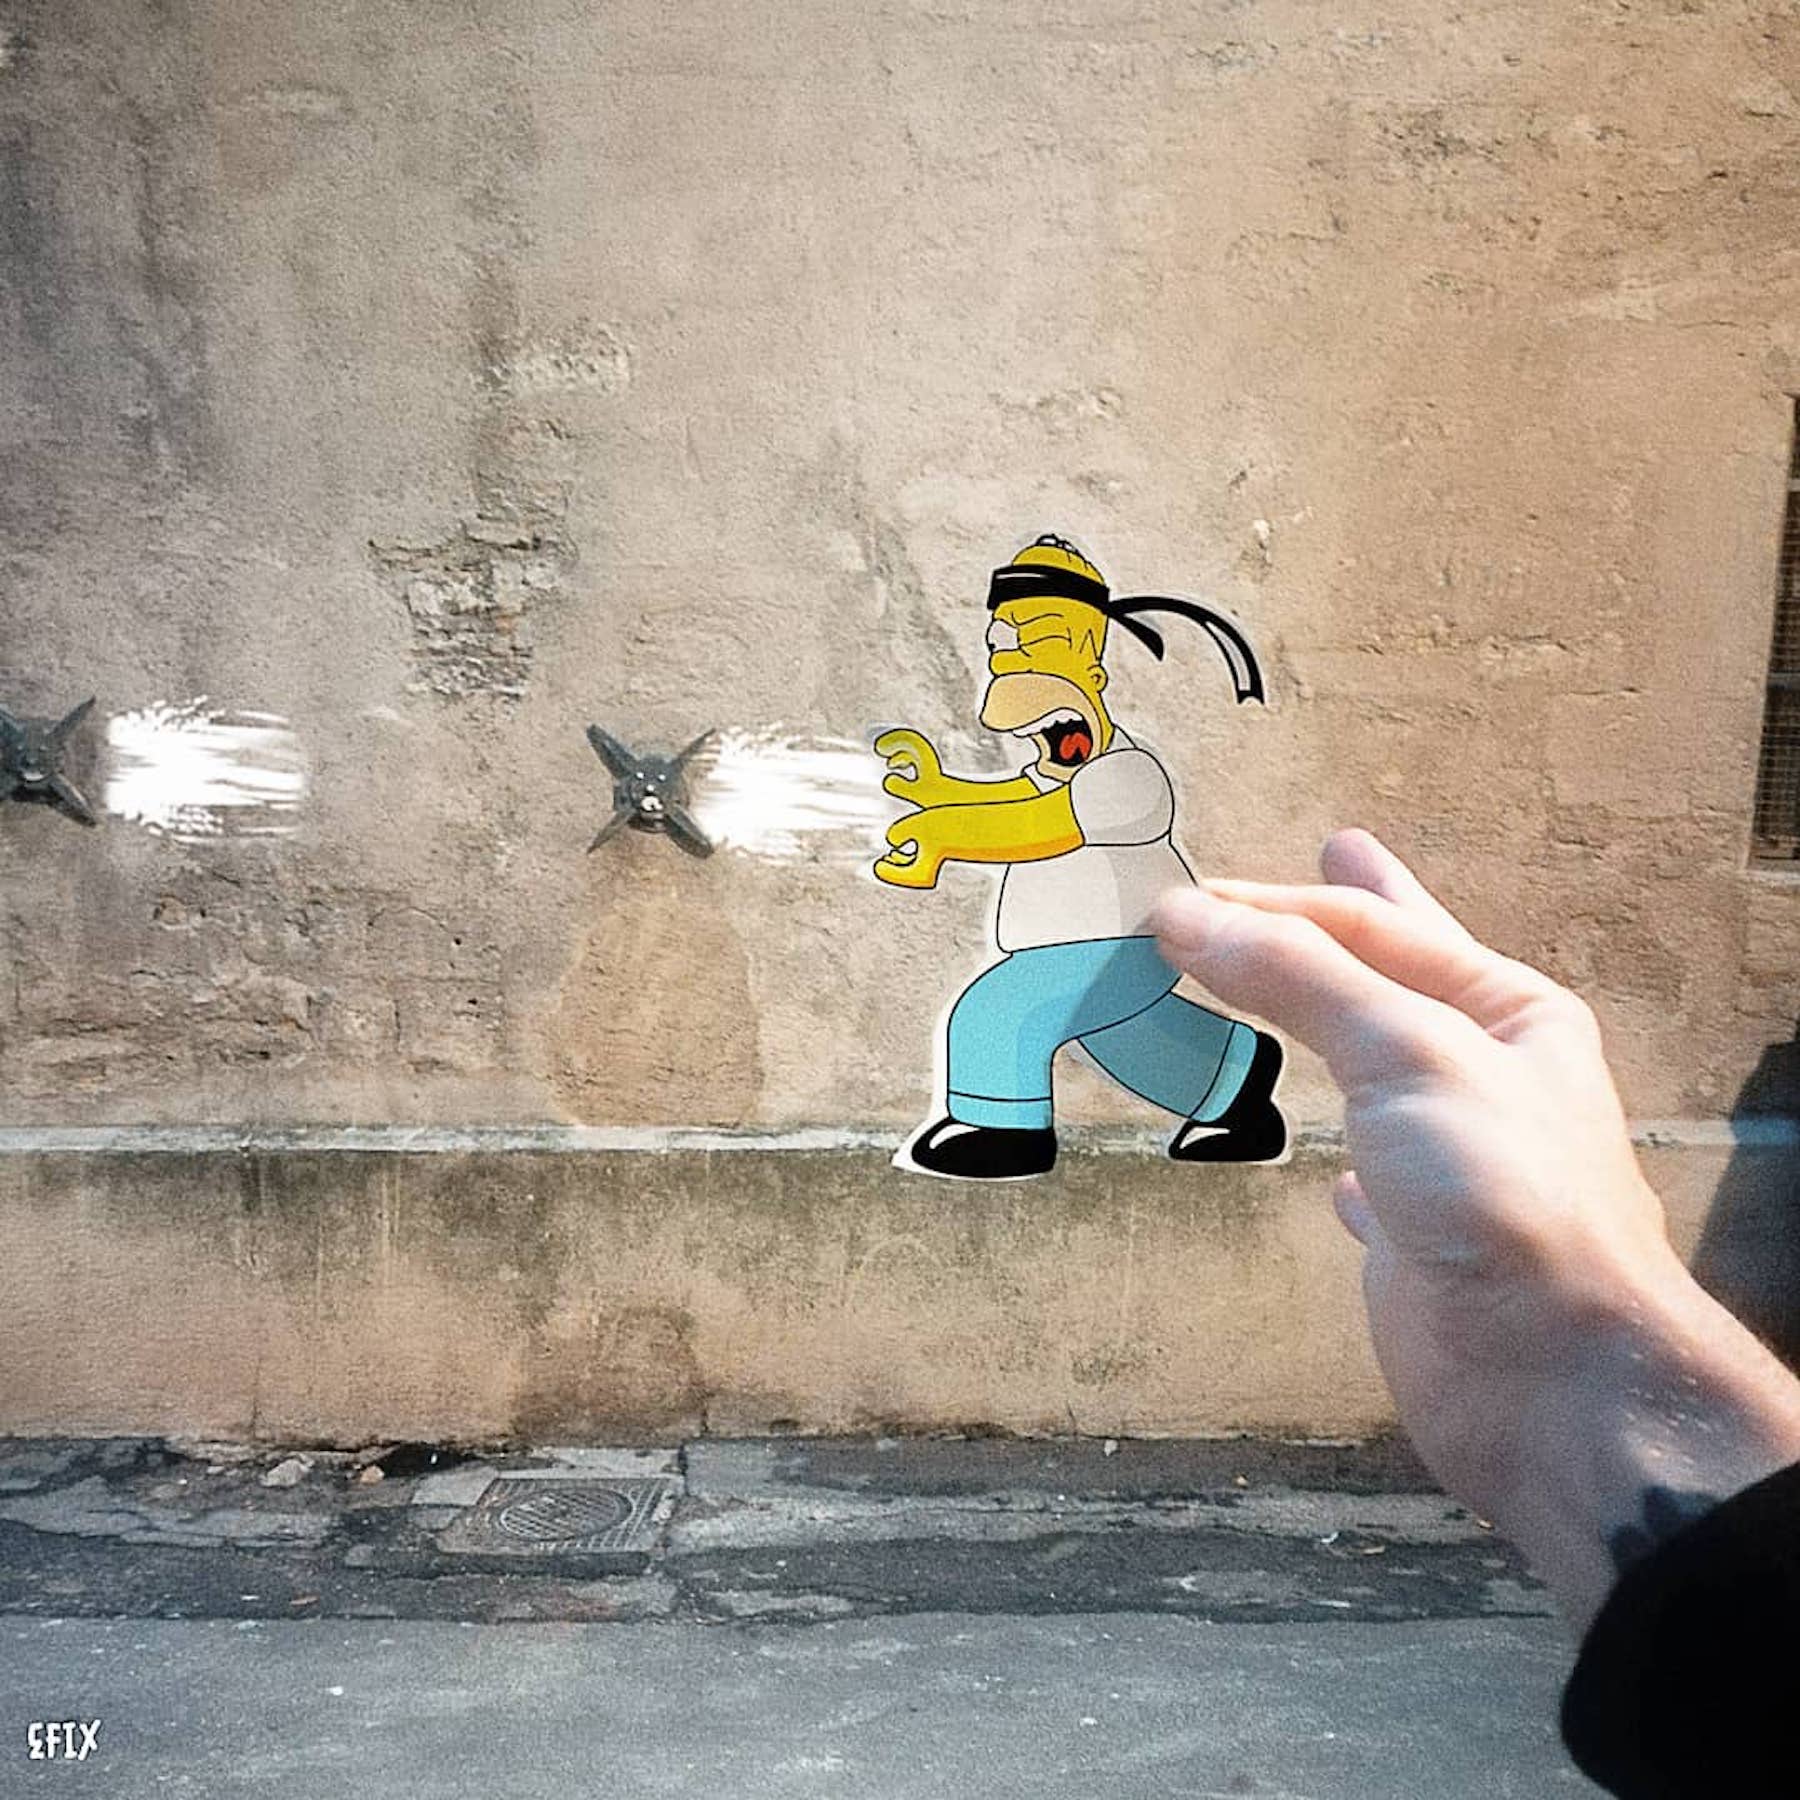 Le street artiste EFIX détourne la ville pour rendre hommage aux Simpson